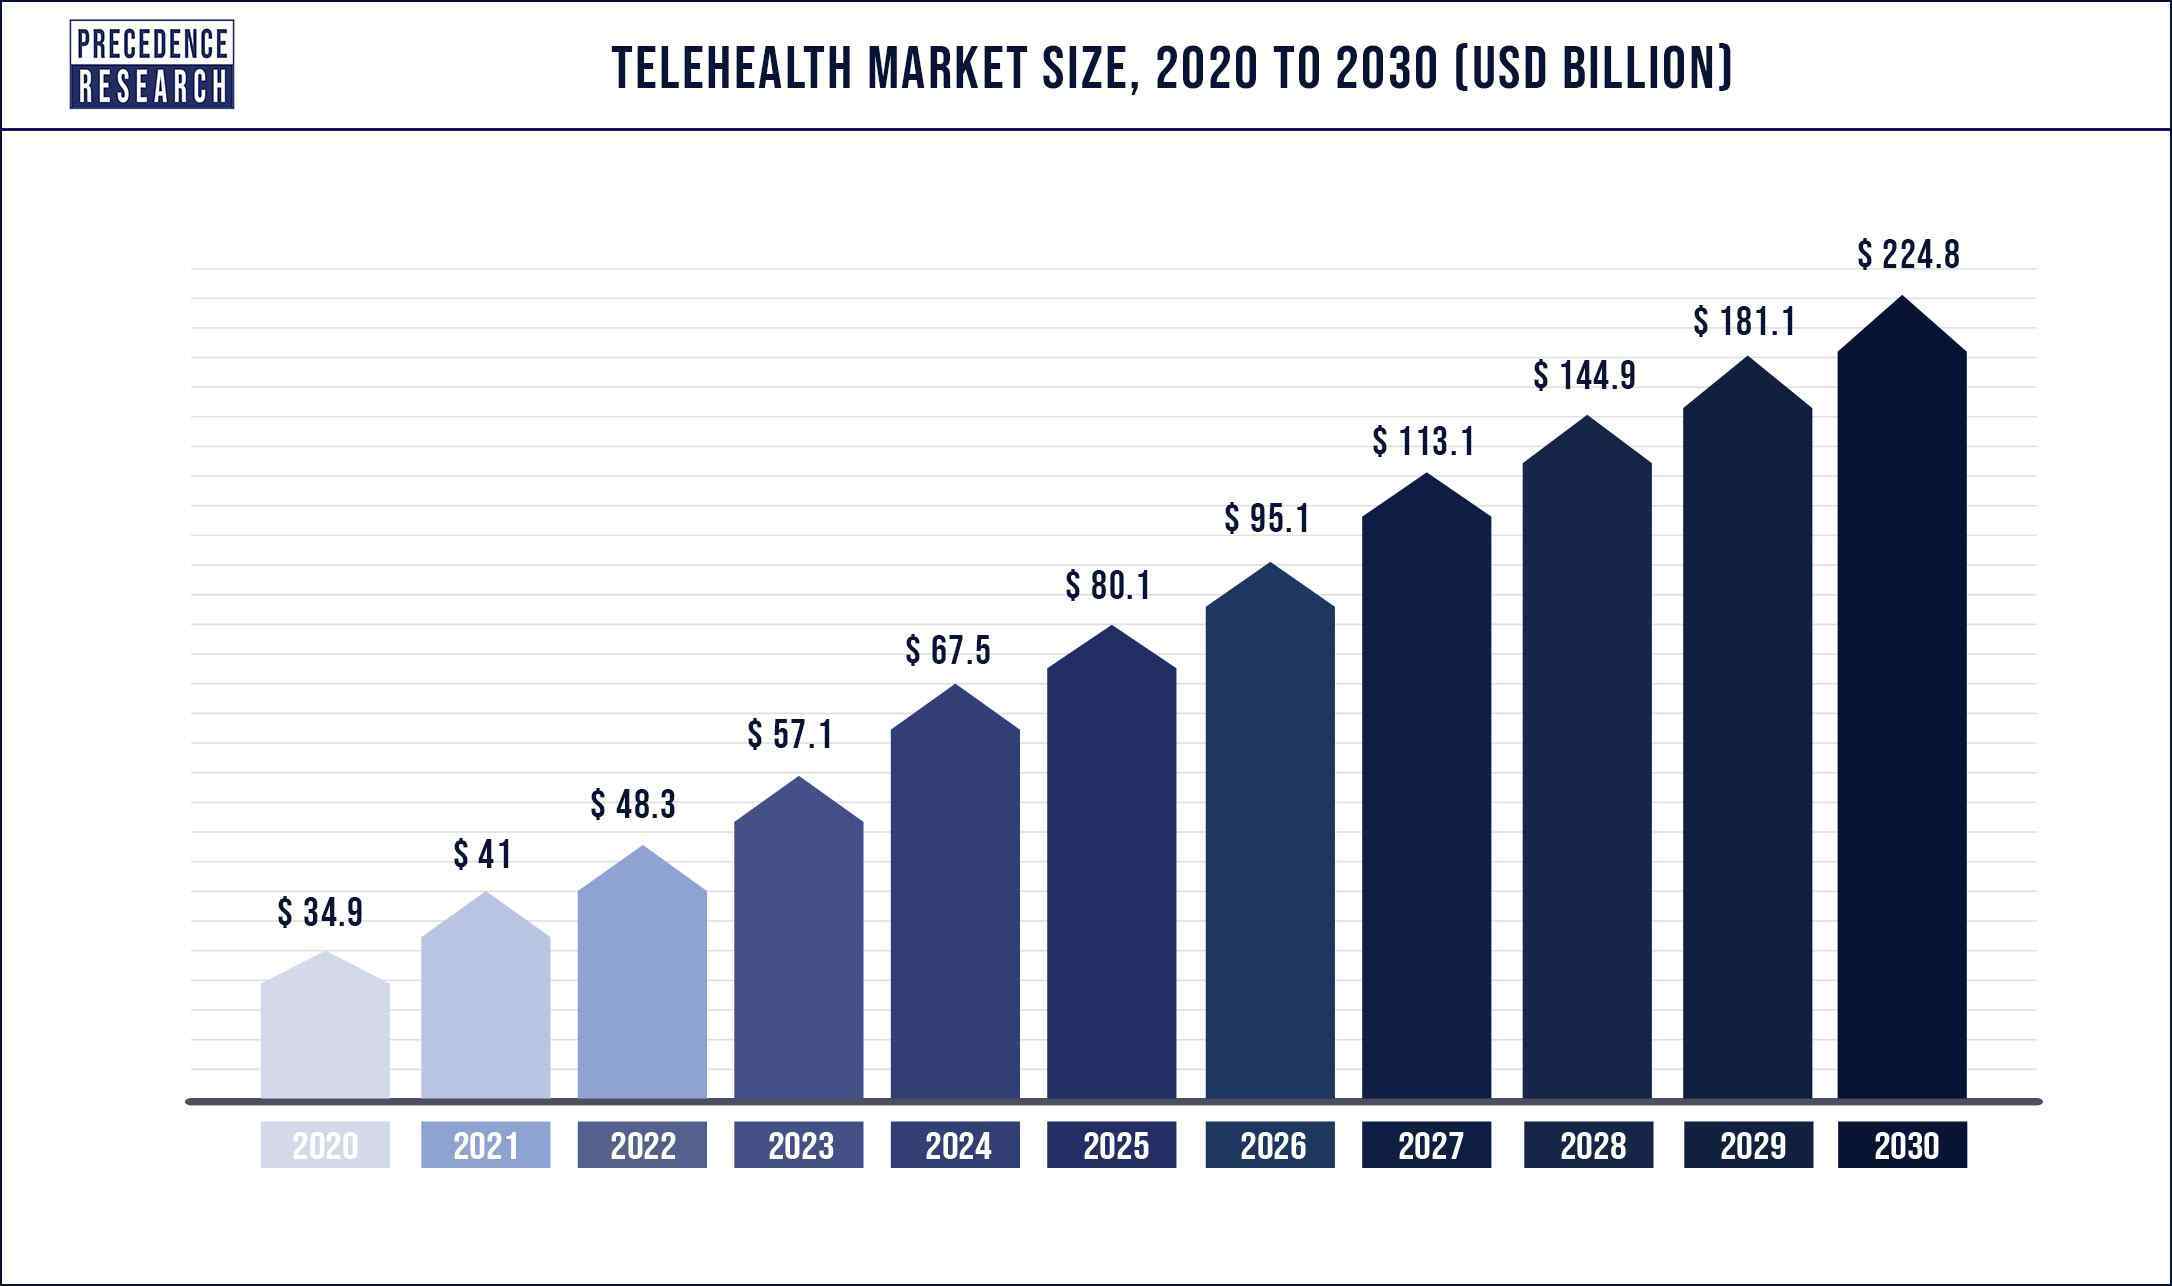 Telehealth Market Size 2020 to 2030